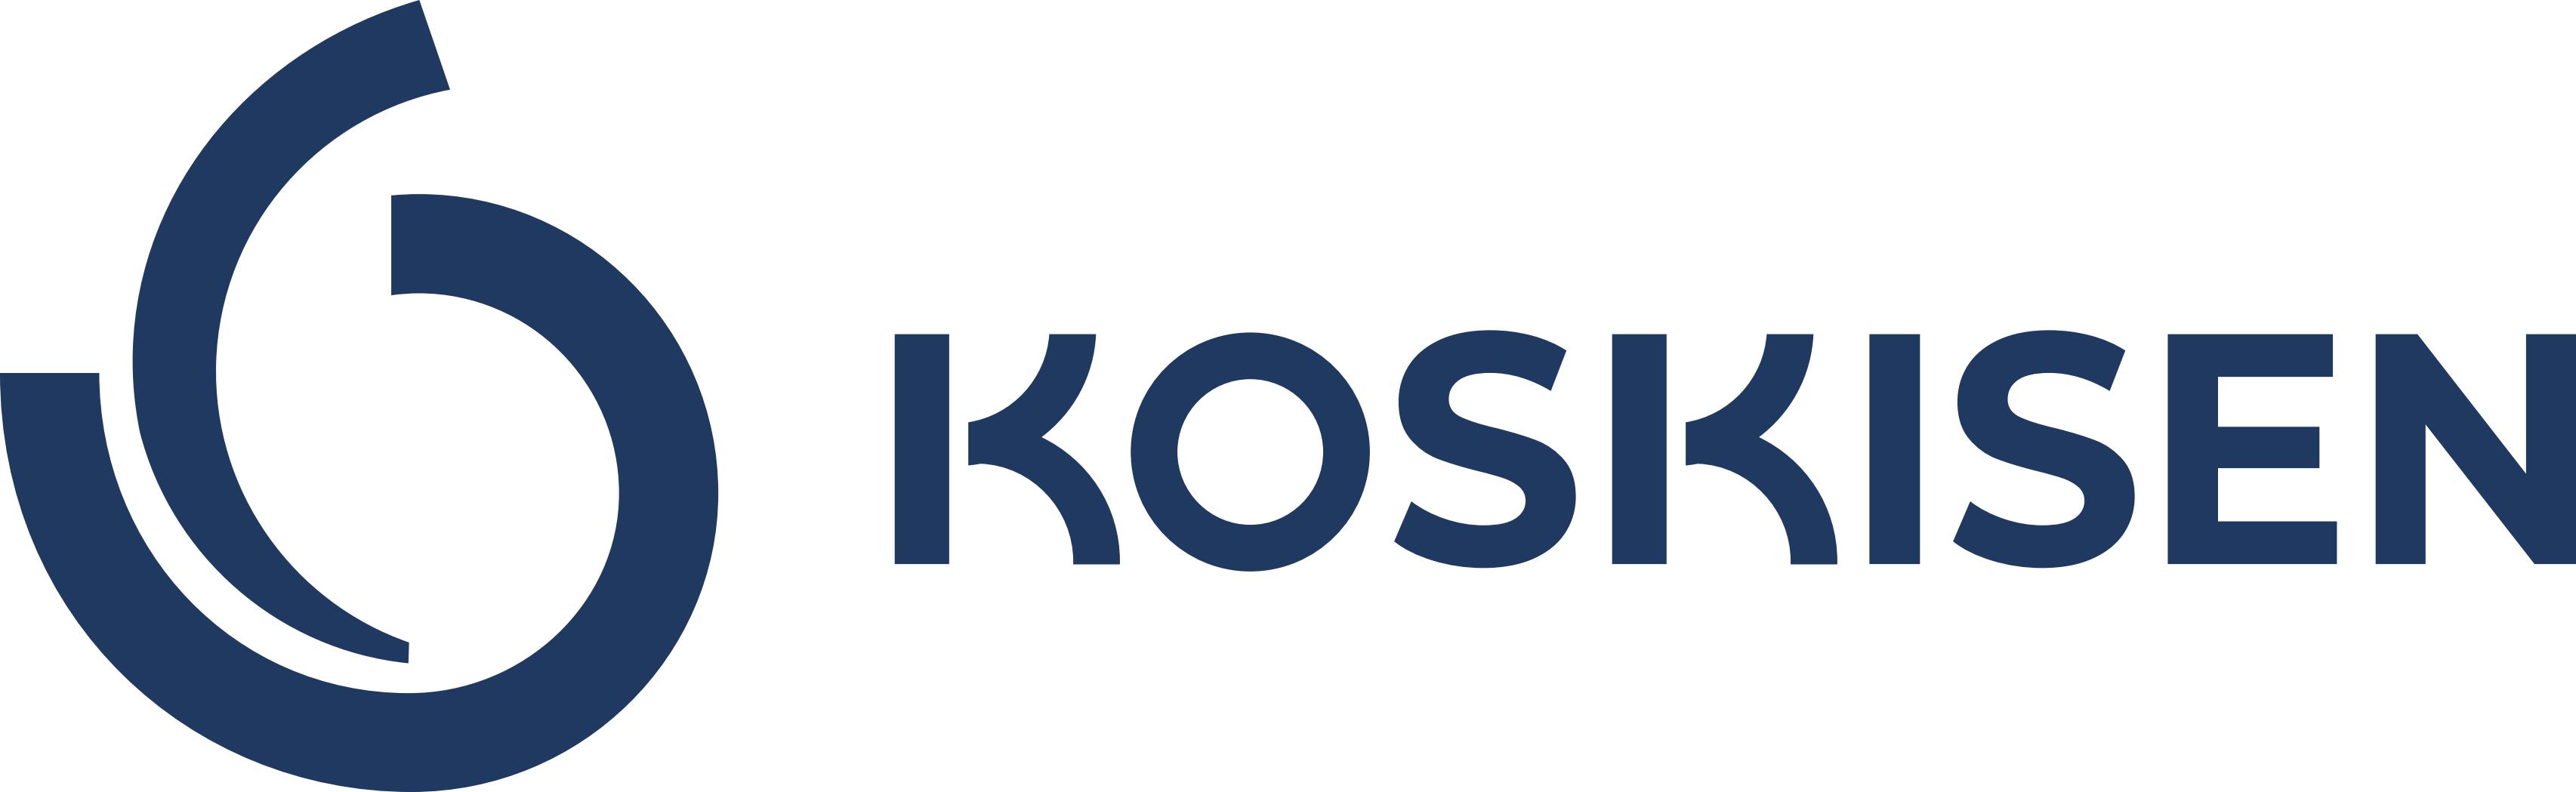 Koskisen logo